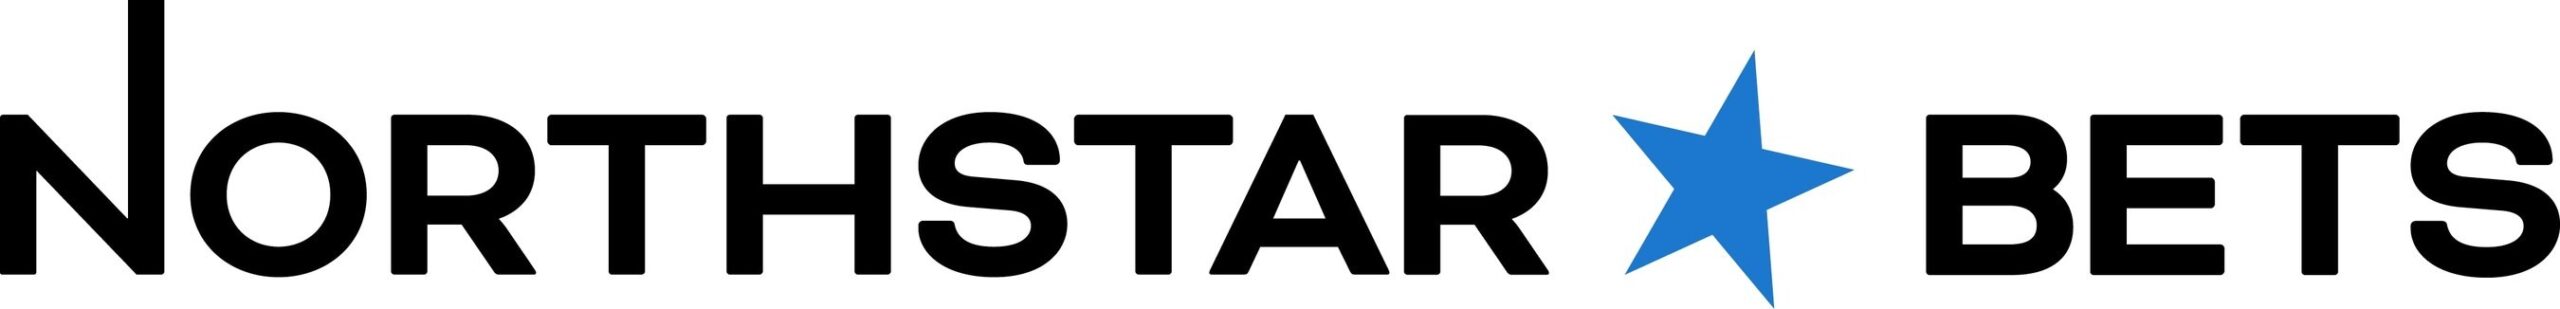 NorthStar Bets Logo